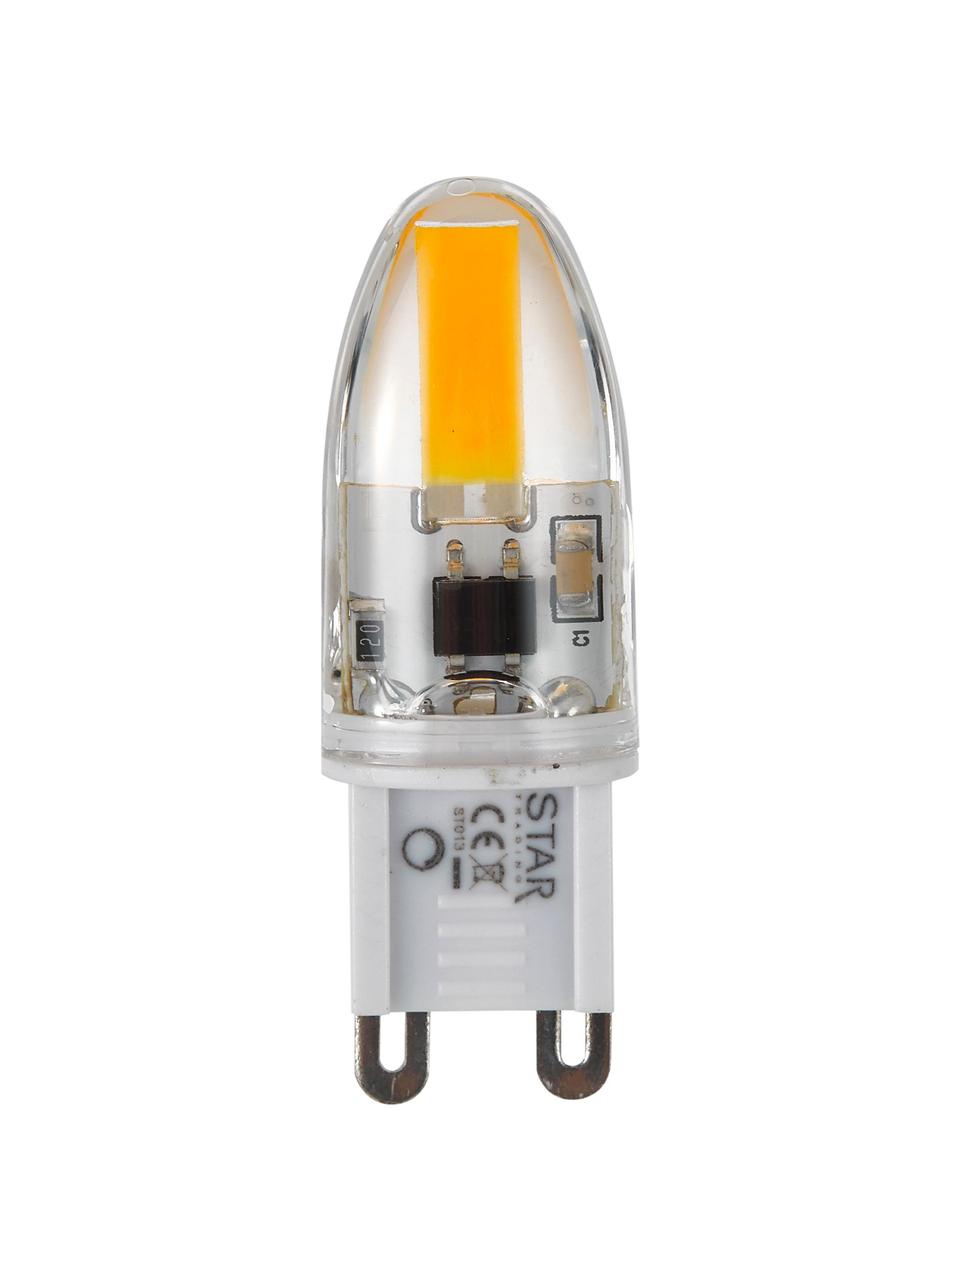 Żarówka LED G9/160 lm, ciepła biel, 5 szt., Transparentny, S 2 x W 5 cm